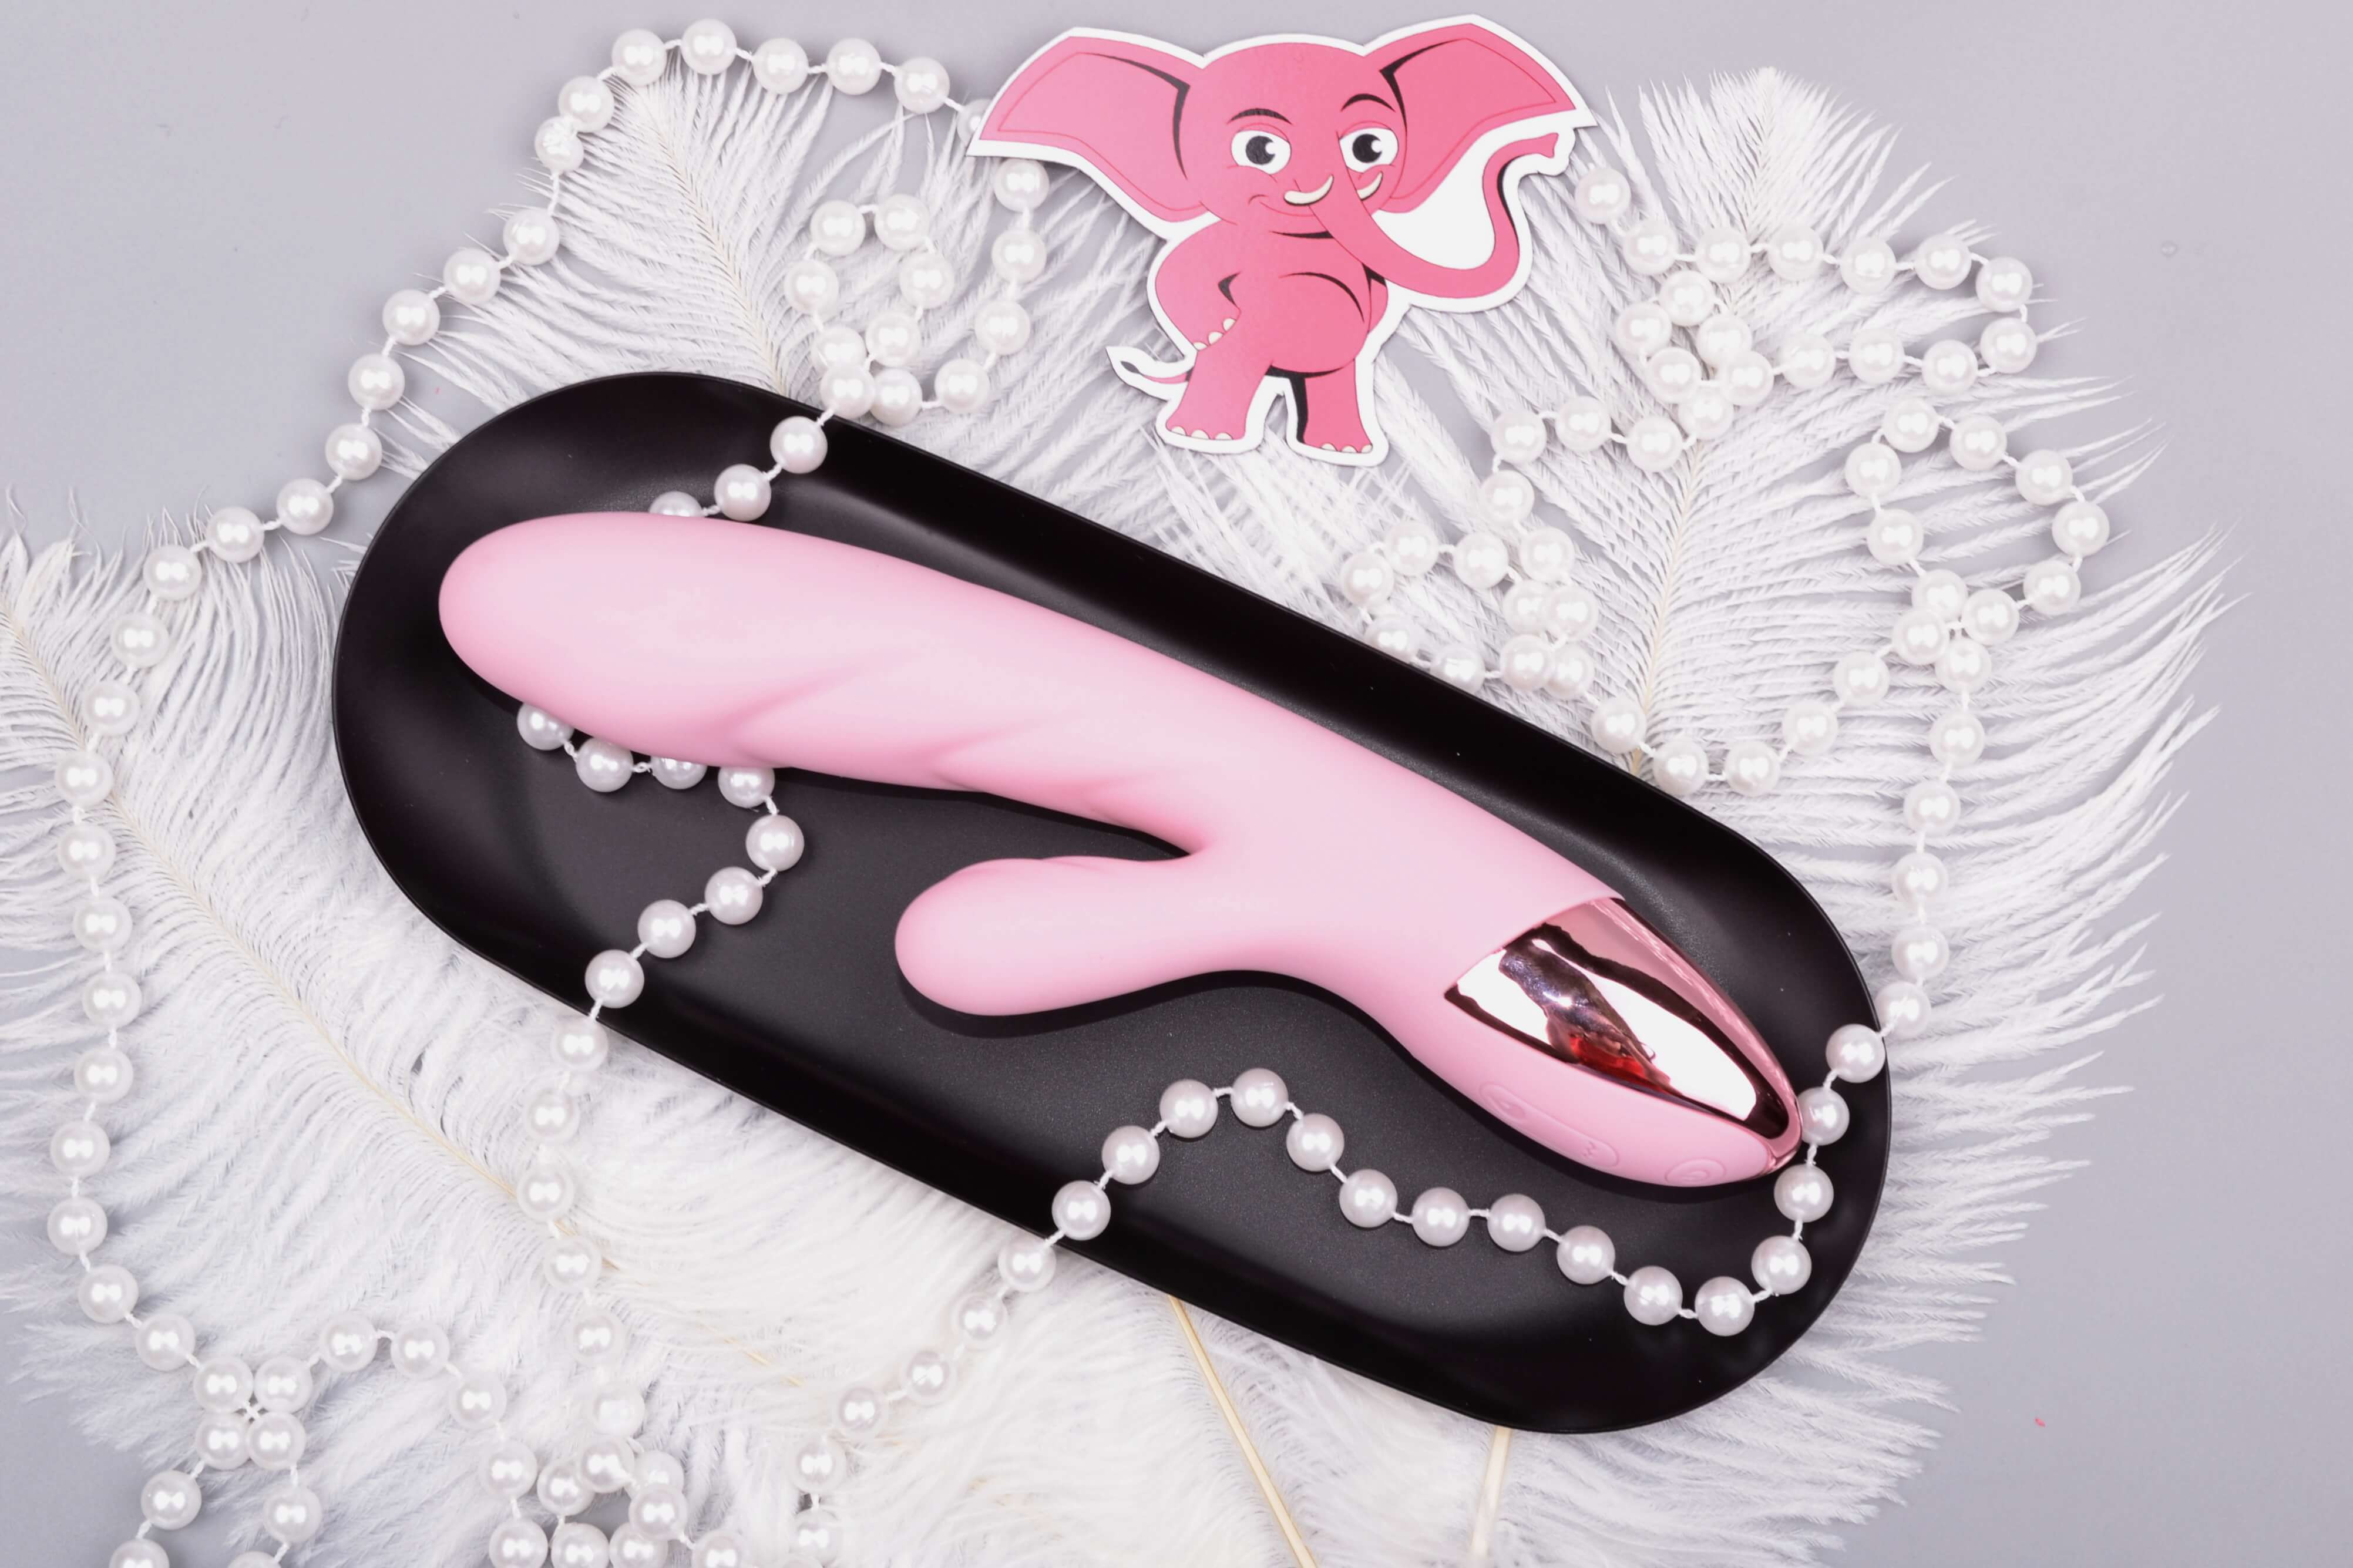 Nahřívací vibrátor s výběžkem na klitoris Lissy